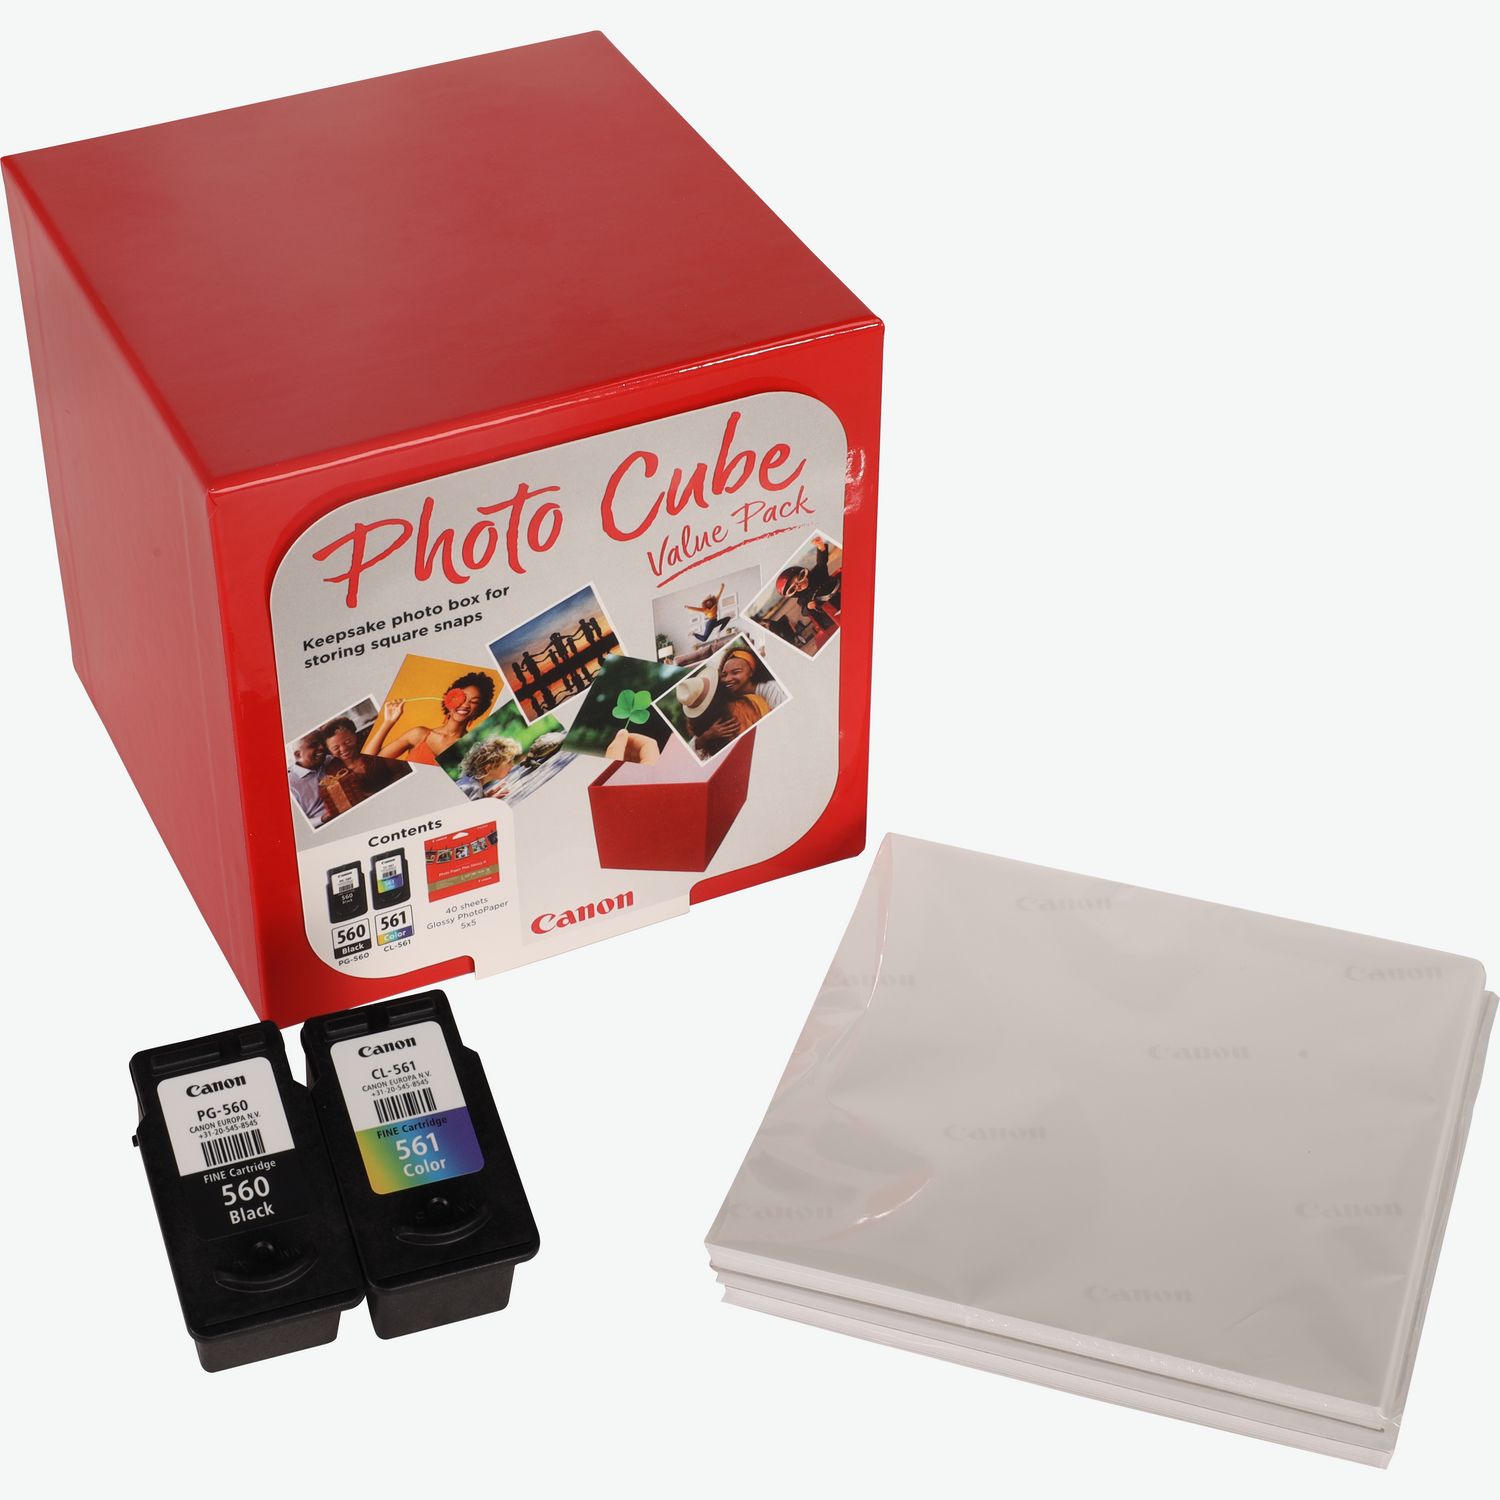 Coffret Canon Photo Cube, avec cartouches d'encre PG-560 et CL-561